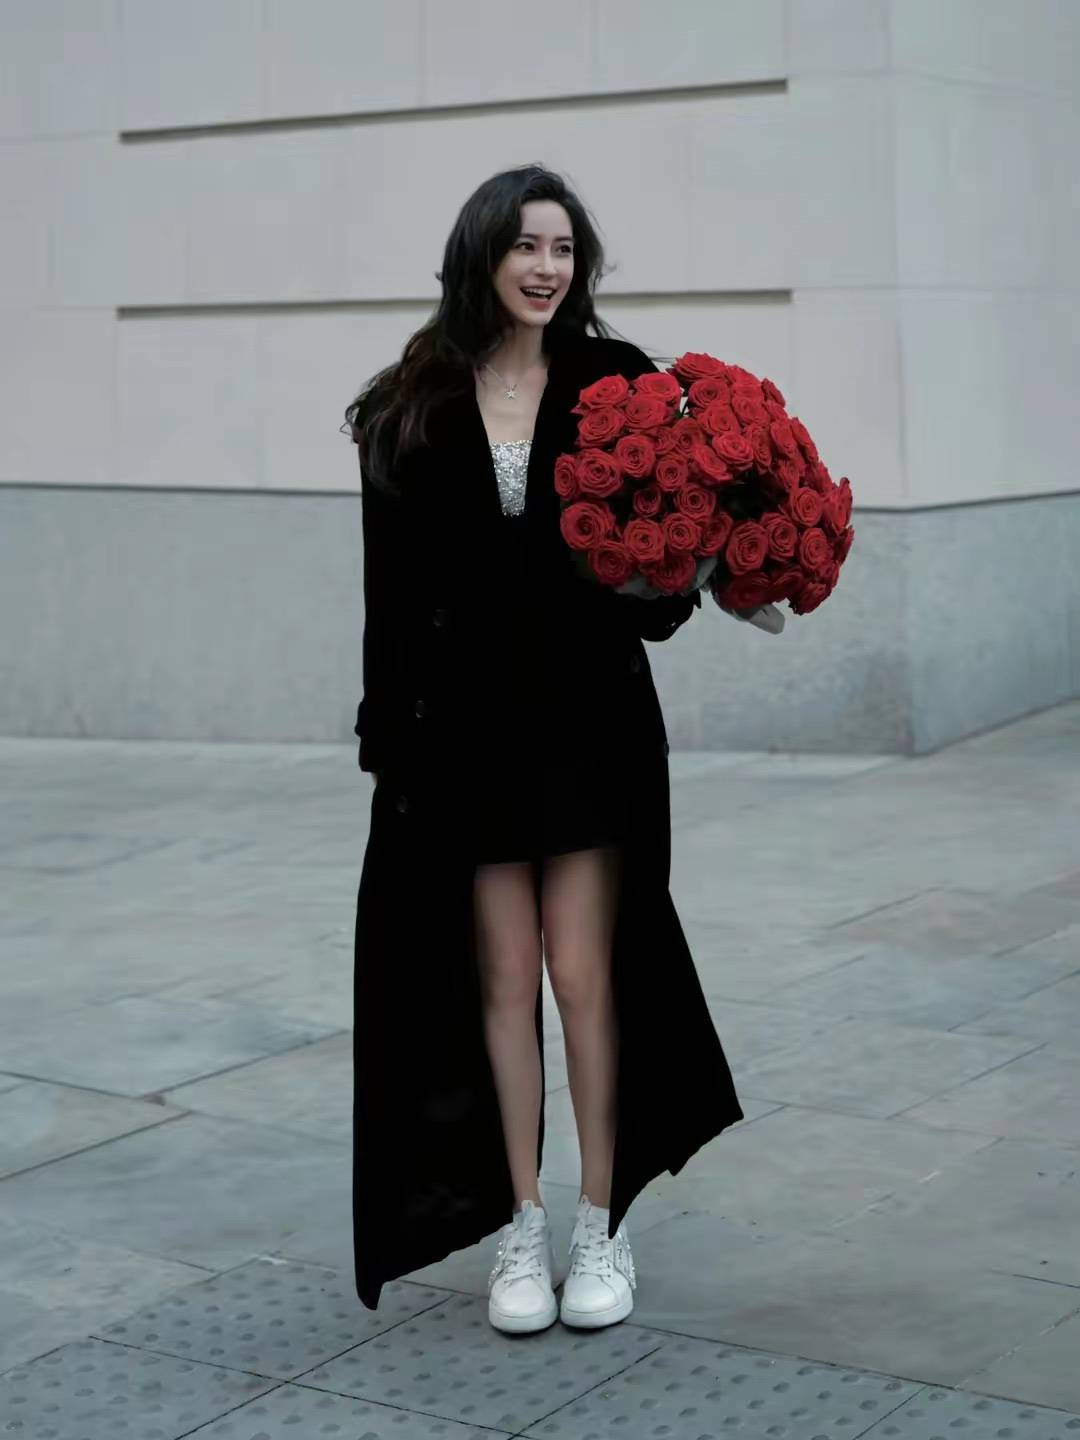 35岁杨颖生日写真高贵大气,手捧红色玫瑰花,气质魅力不减